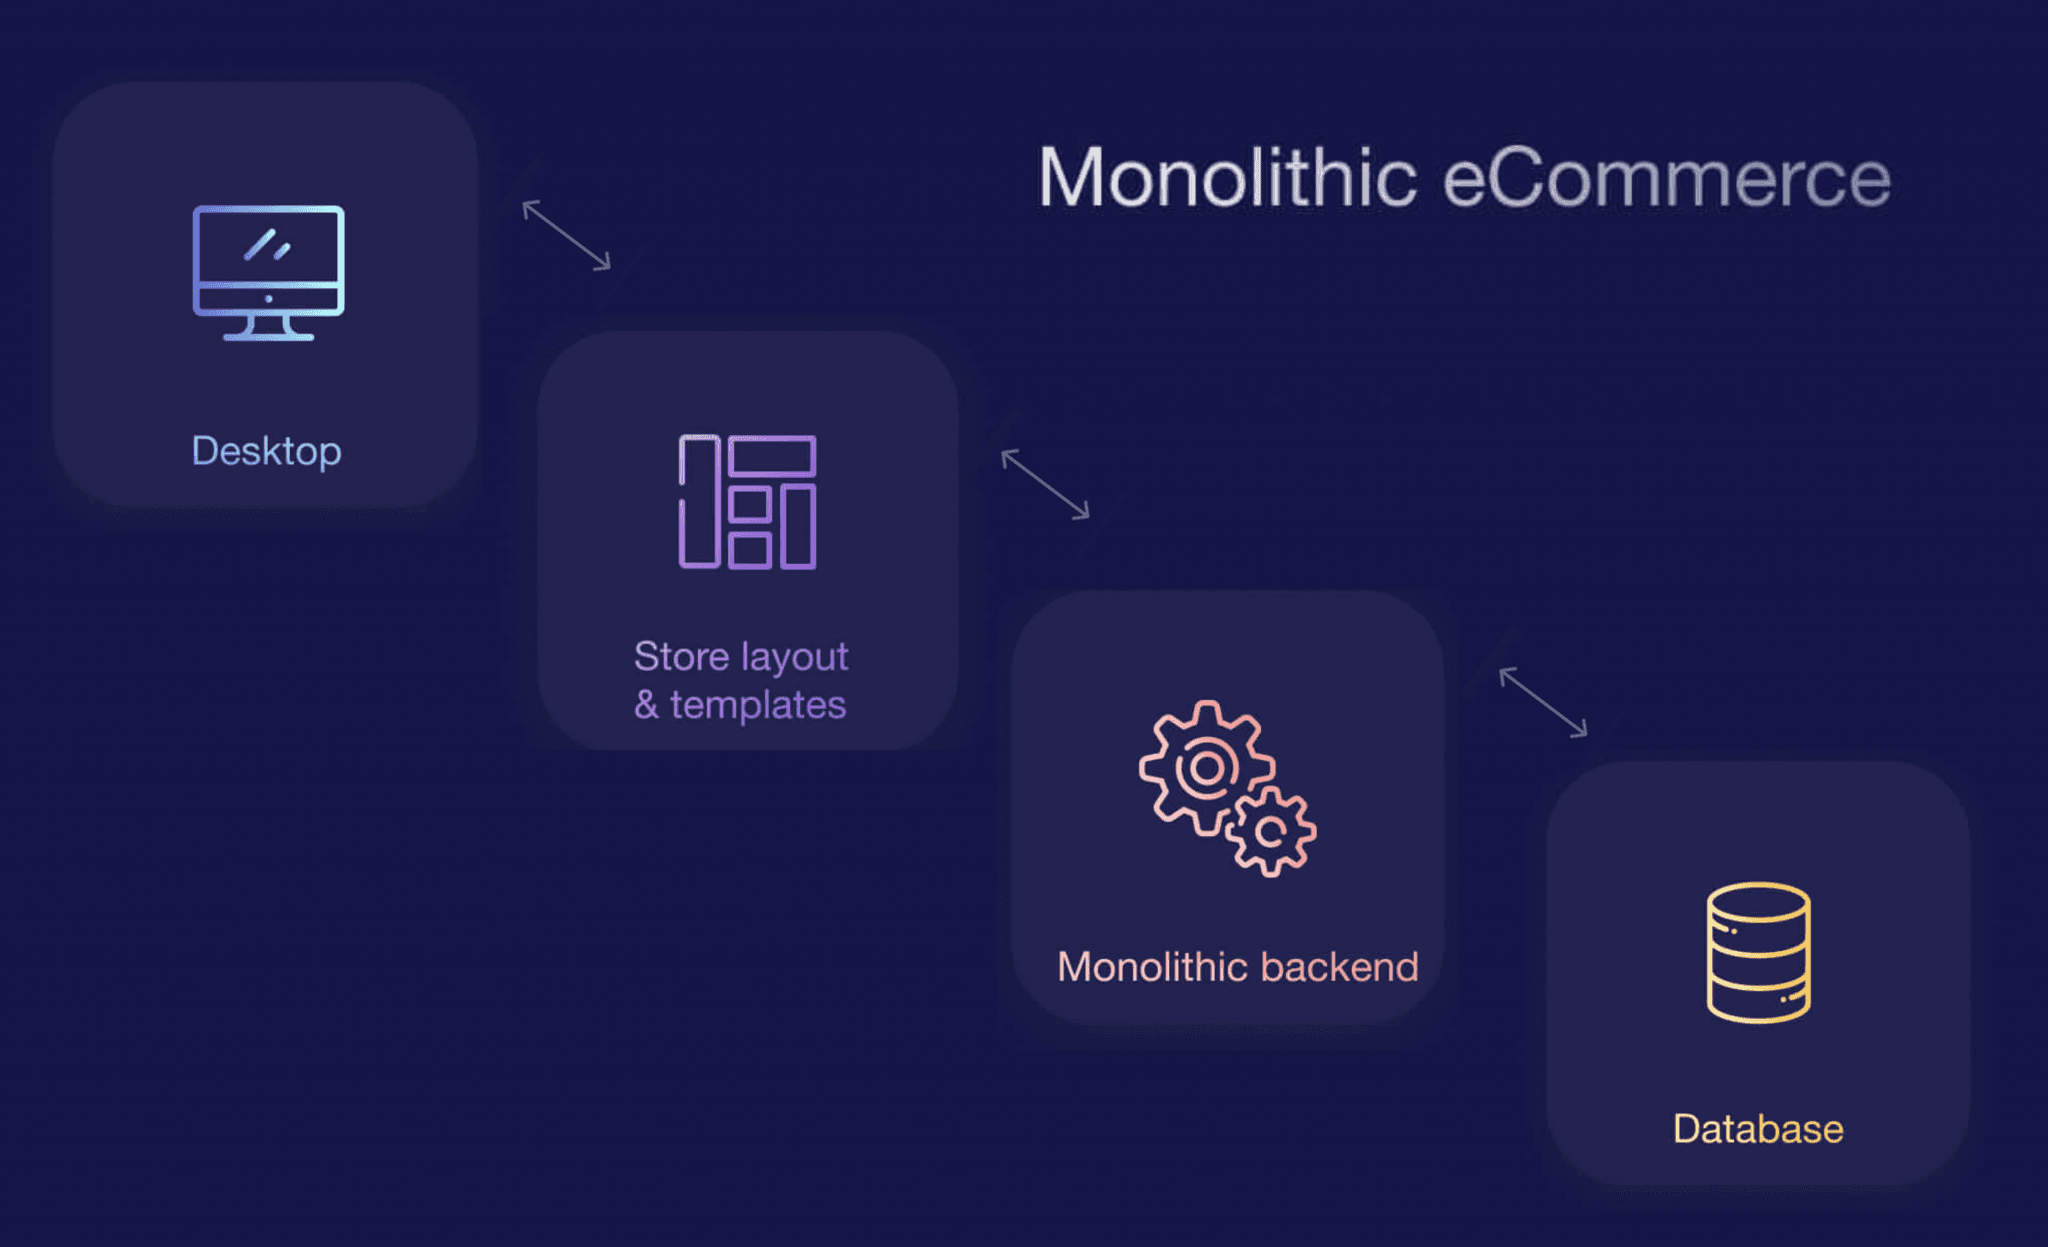 Monolithic eCommerce explained